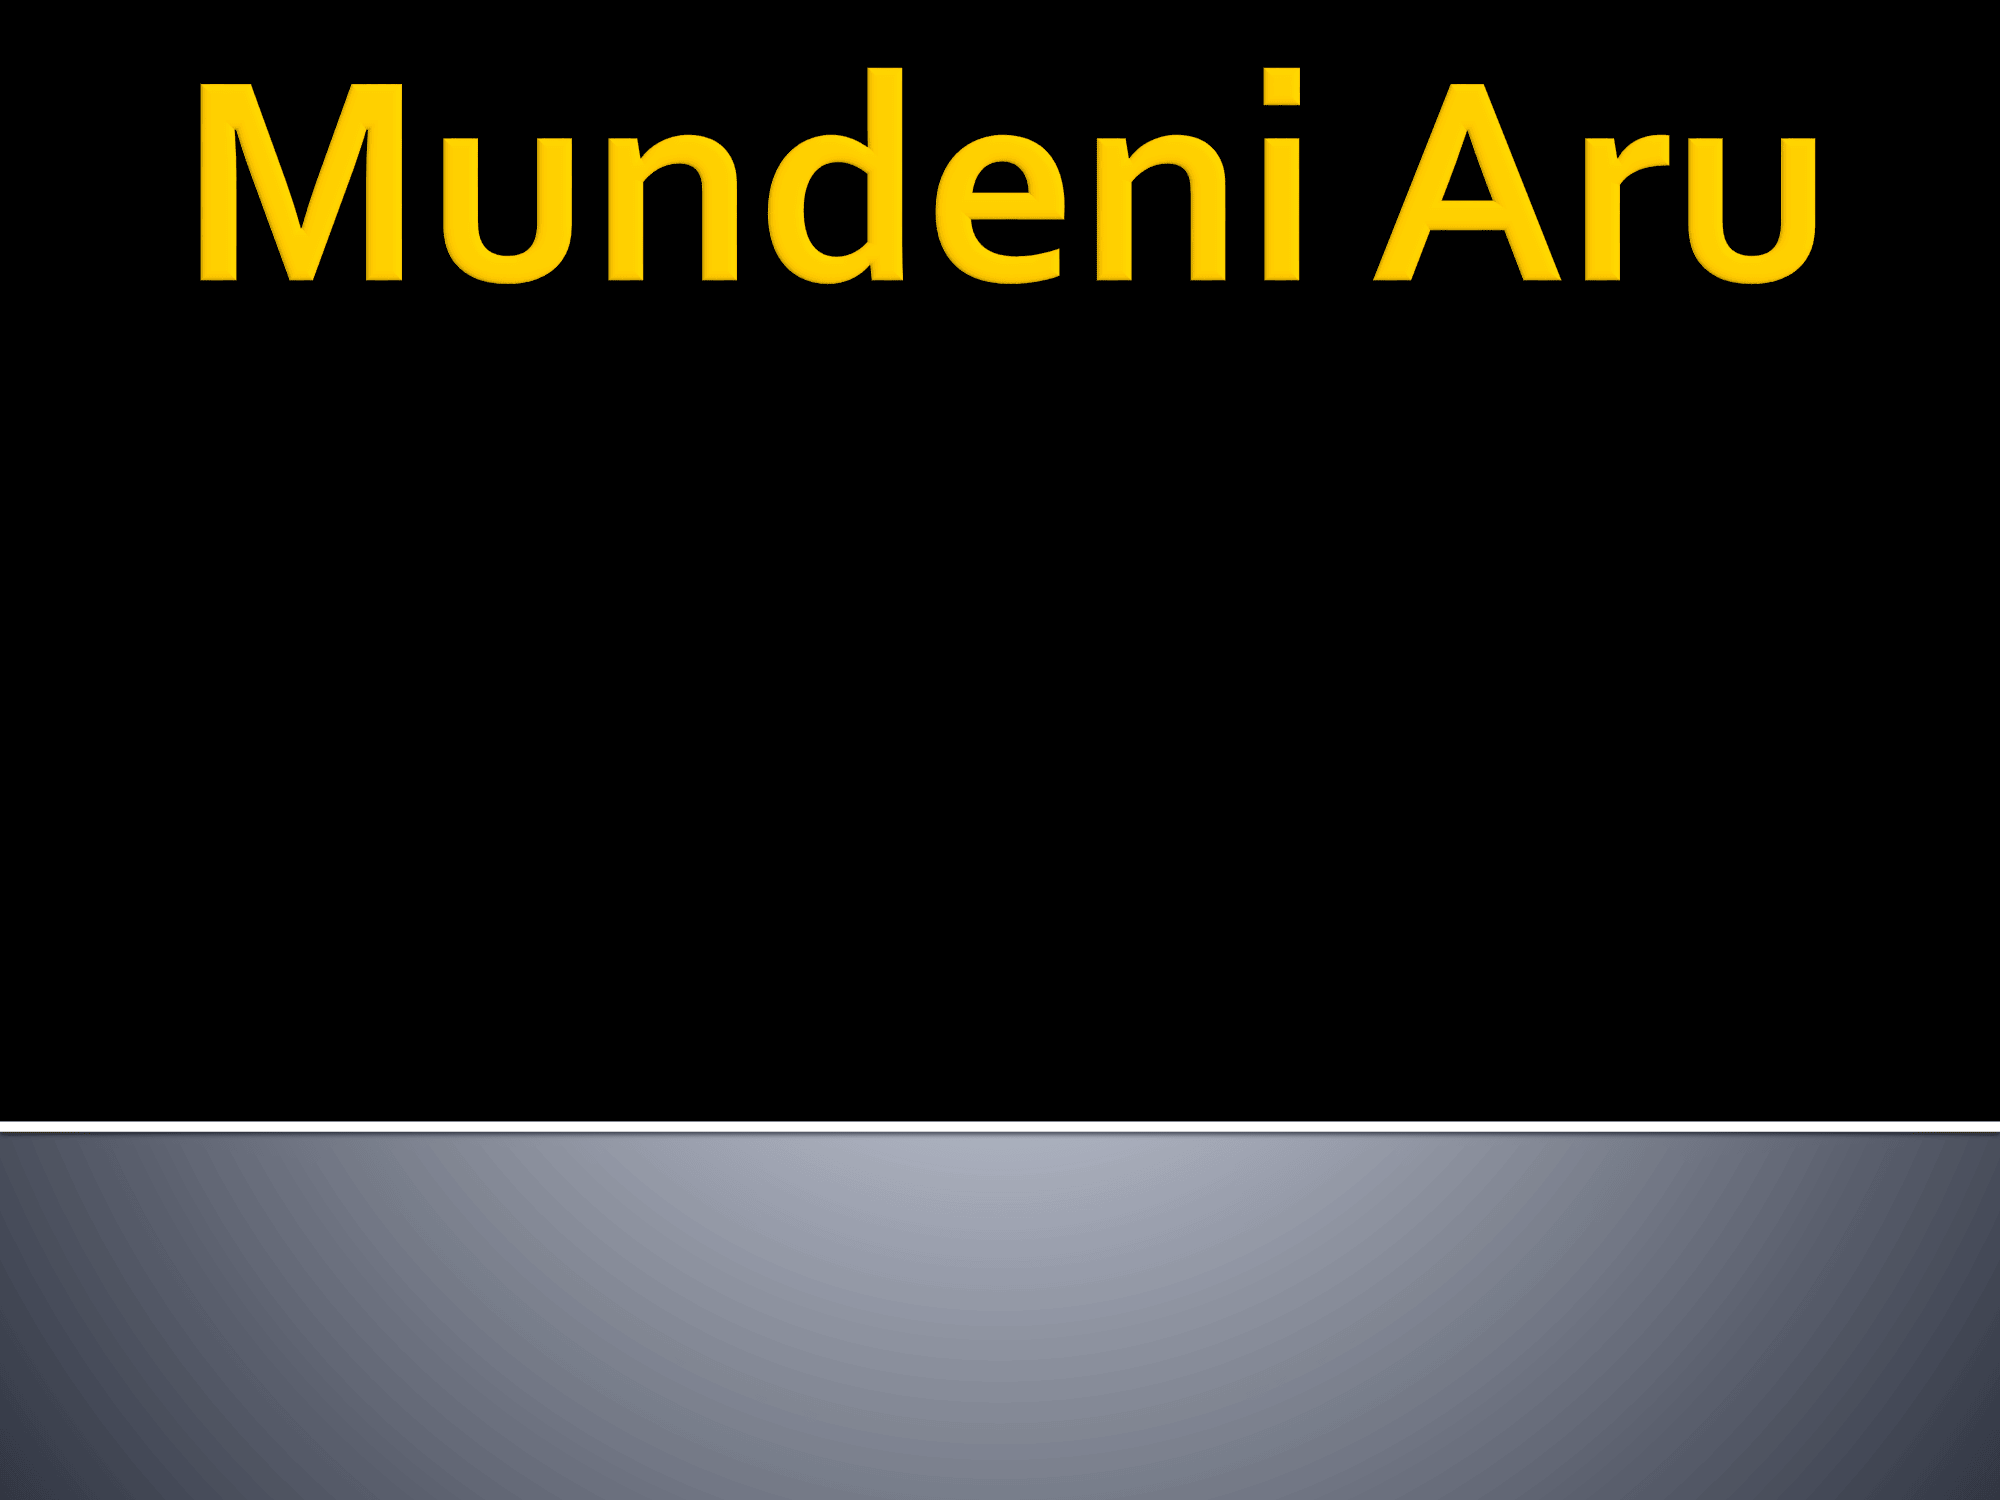 Mundeni Aru